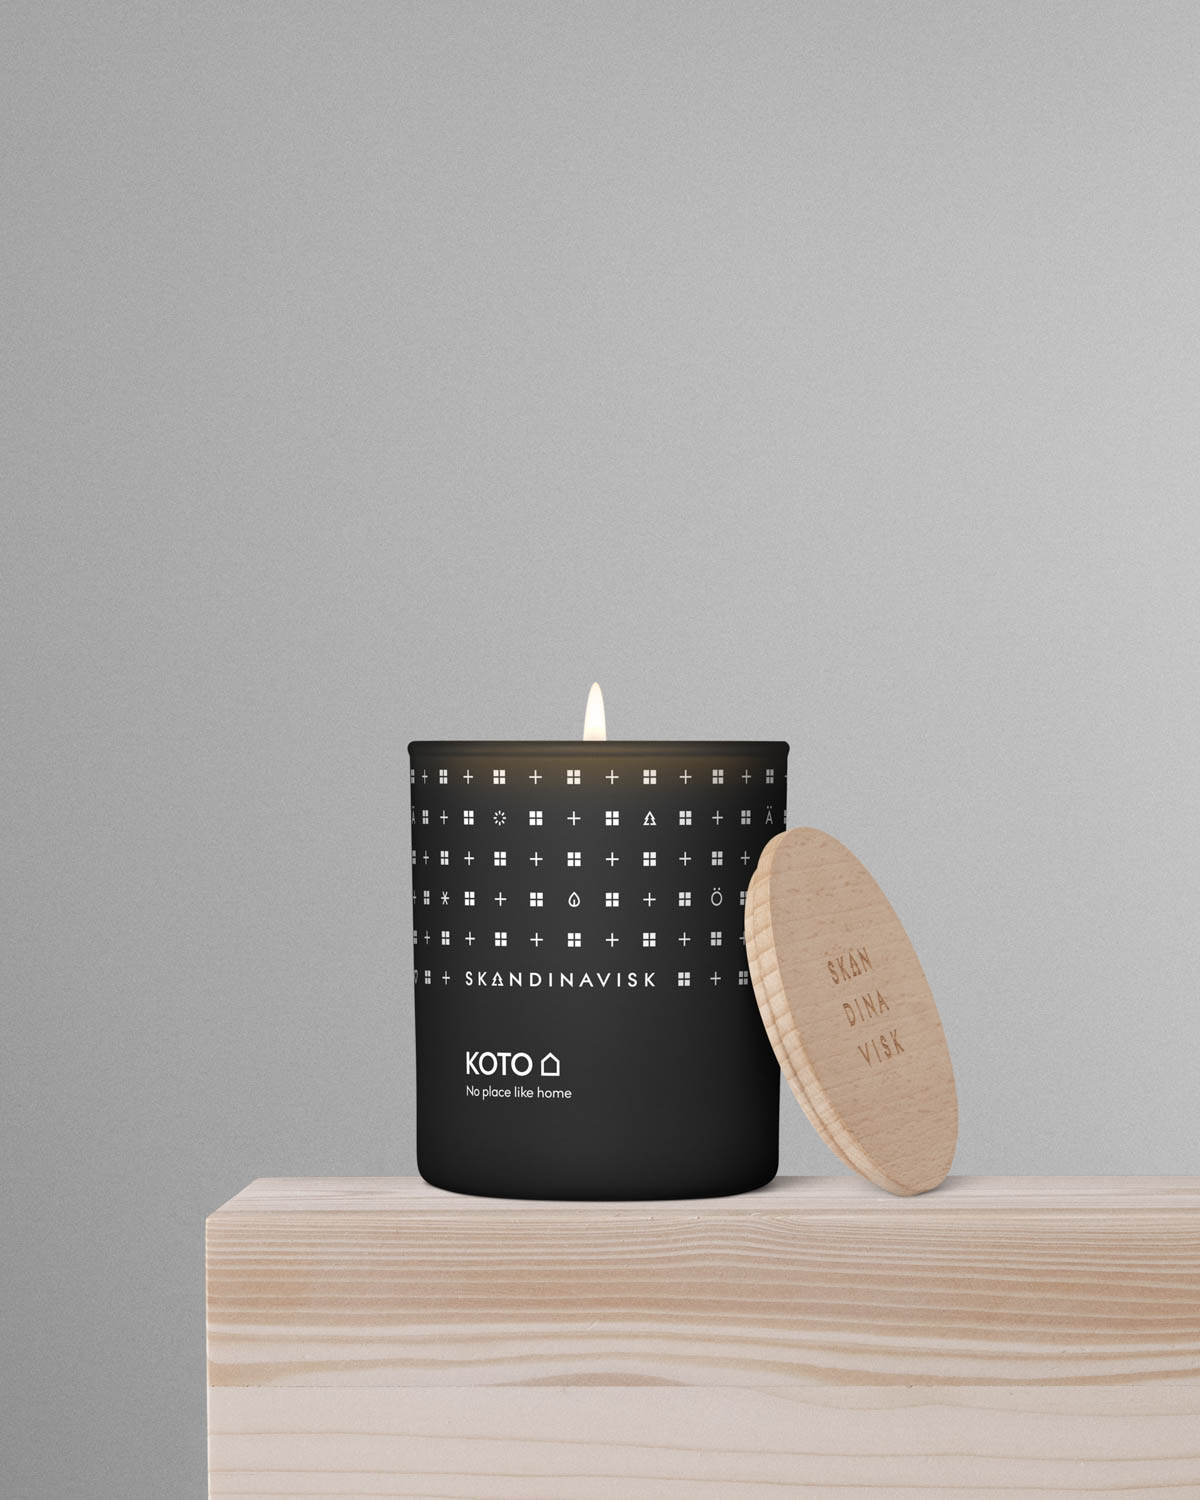 interiorbutikken skandinavisk hjem fritid livsstil duftlys scented candle g koto interior design nett web STYLING KOTO CANDLE G